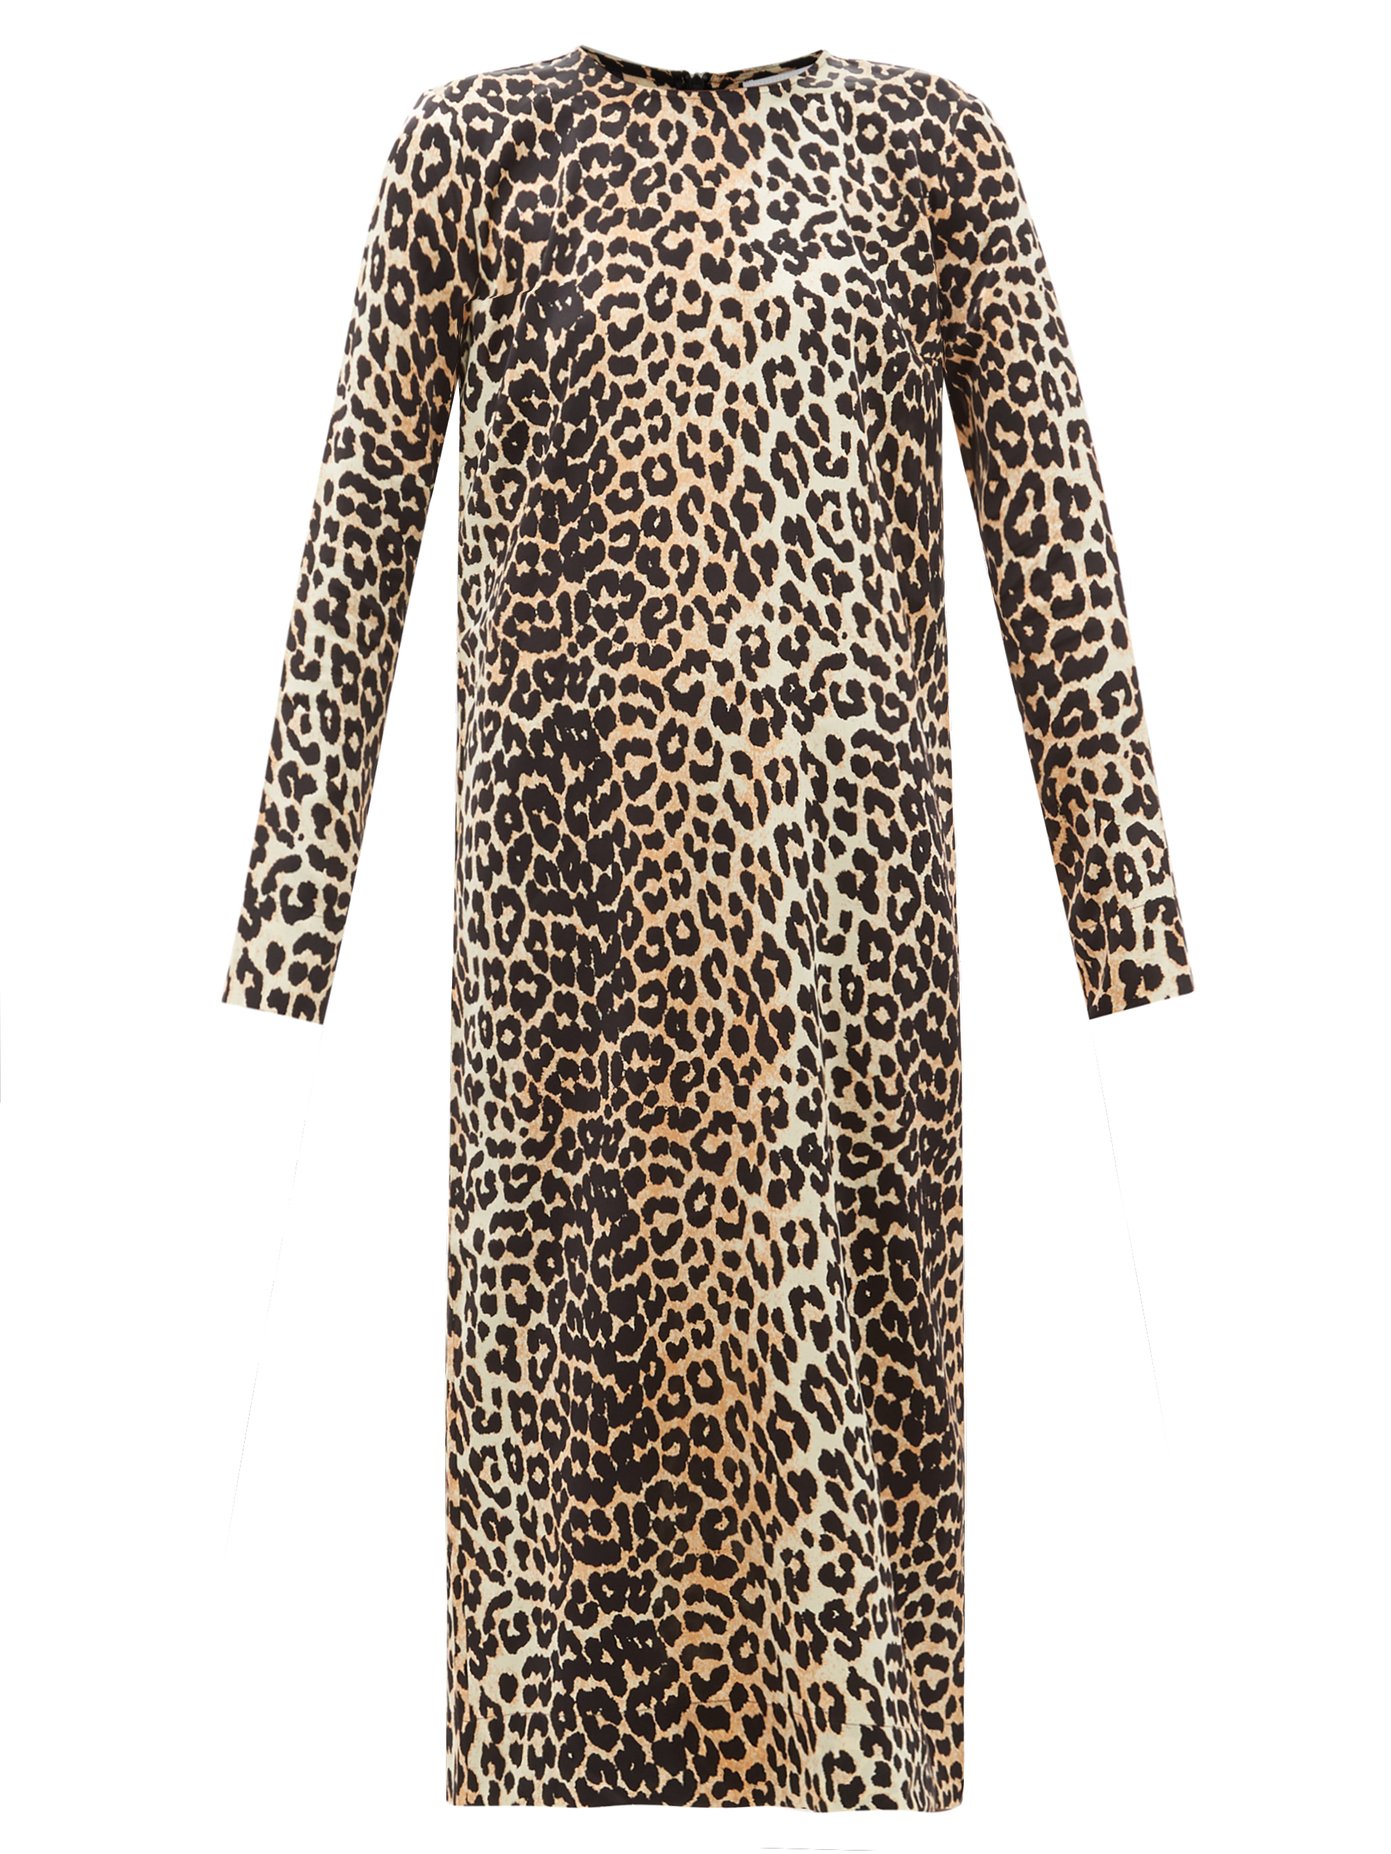 ganni leopard print dress